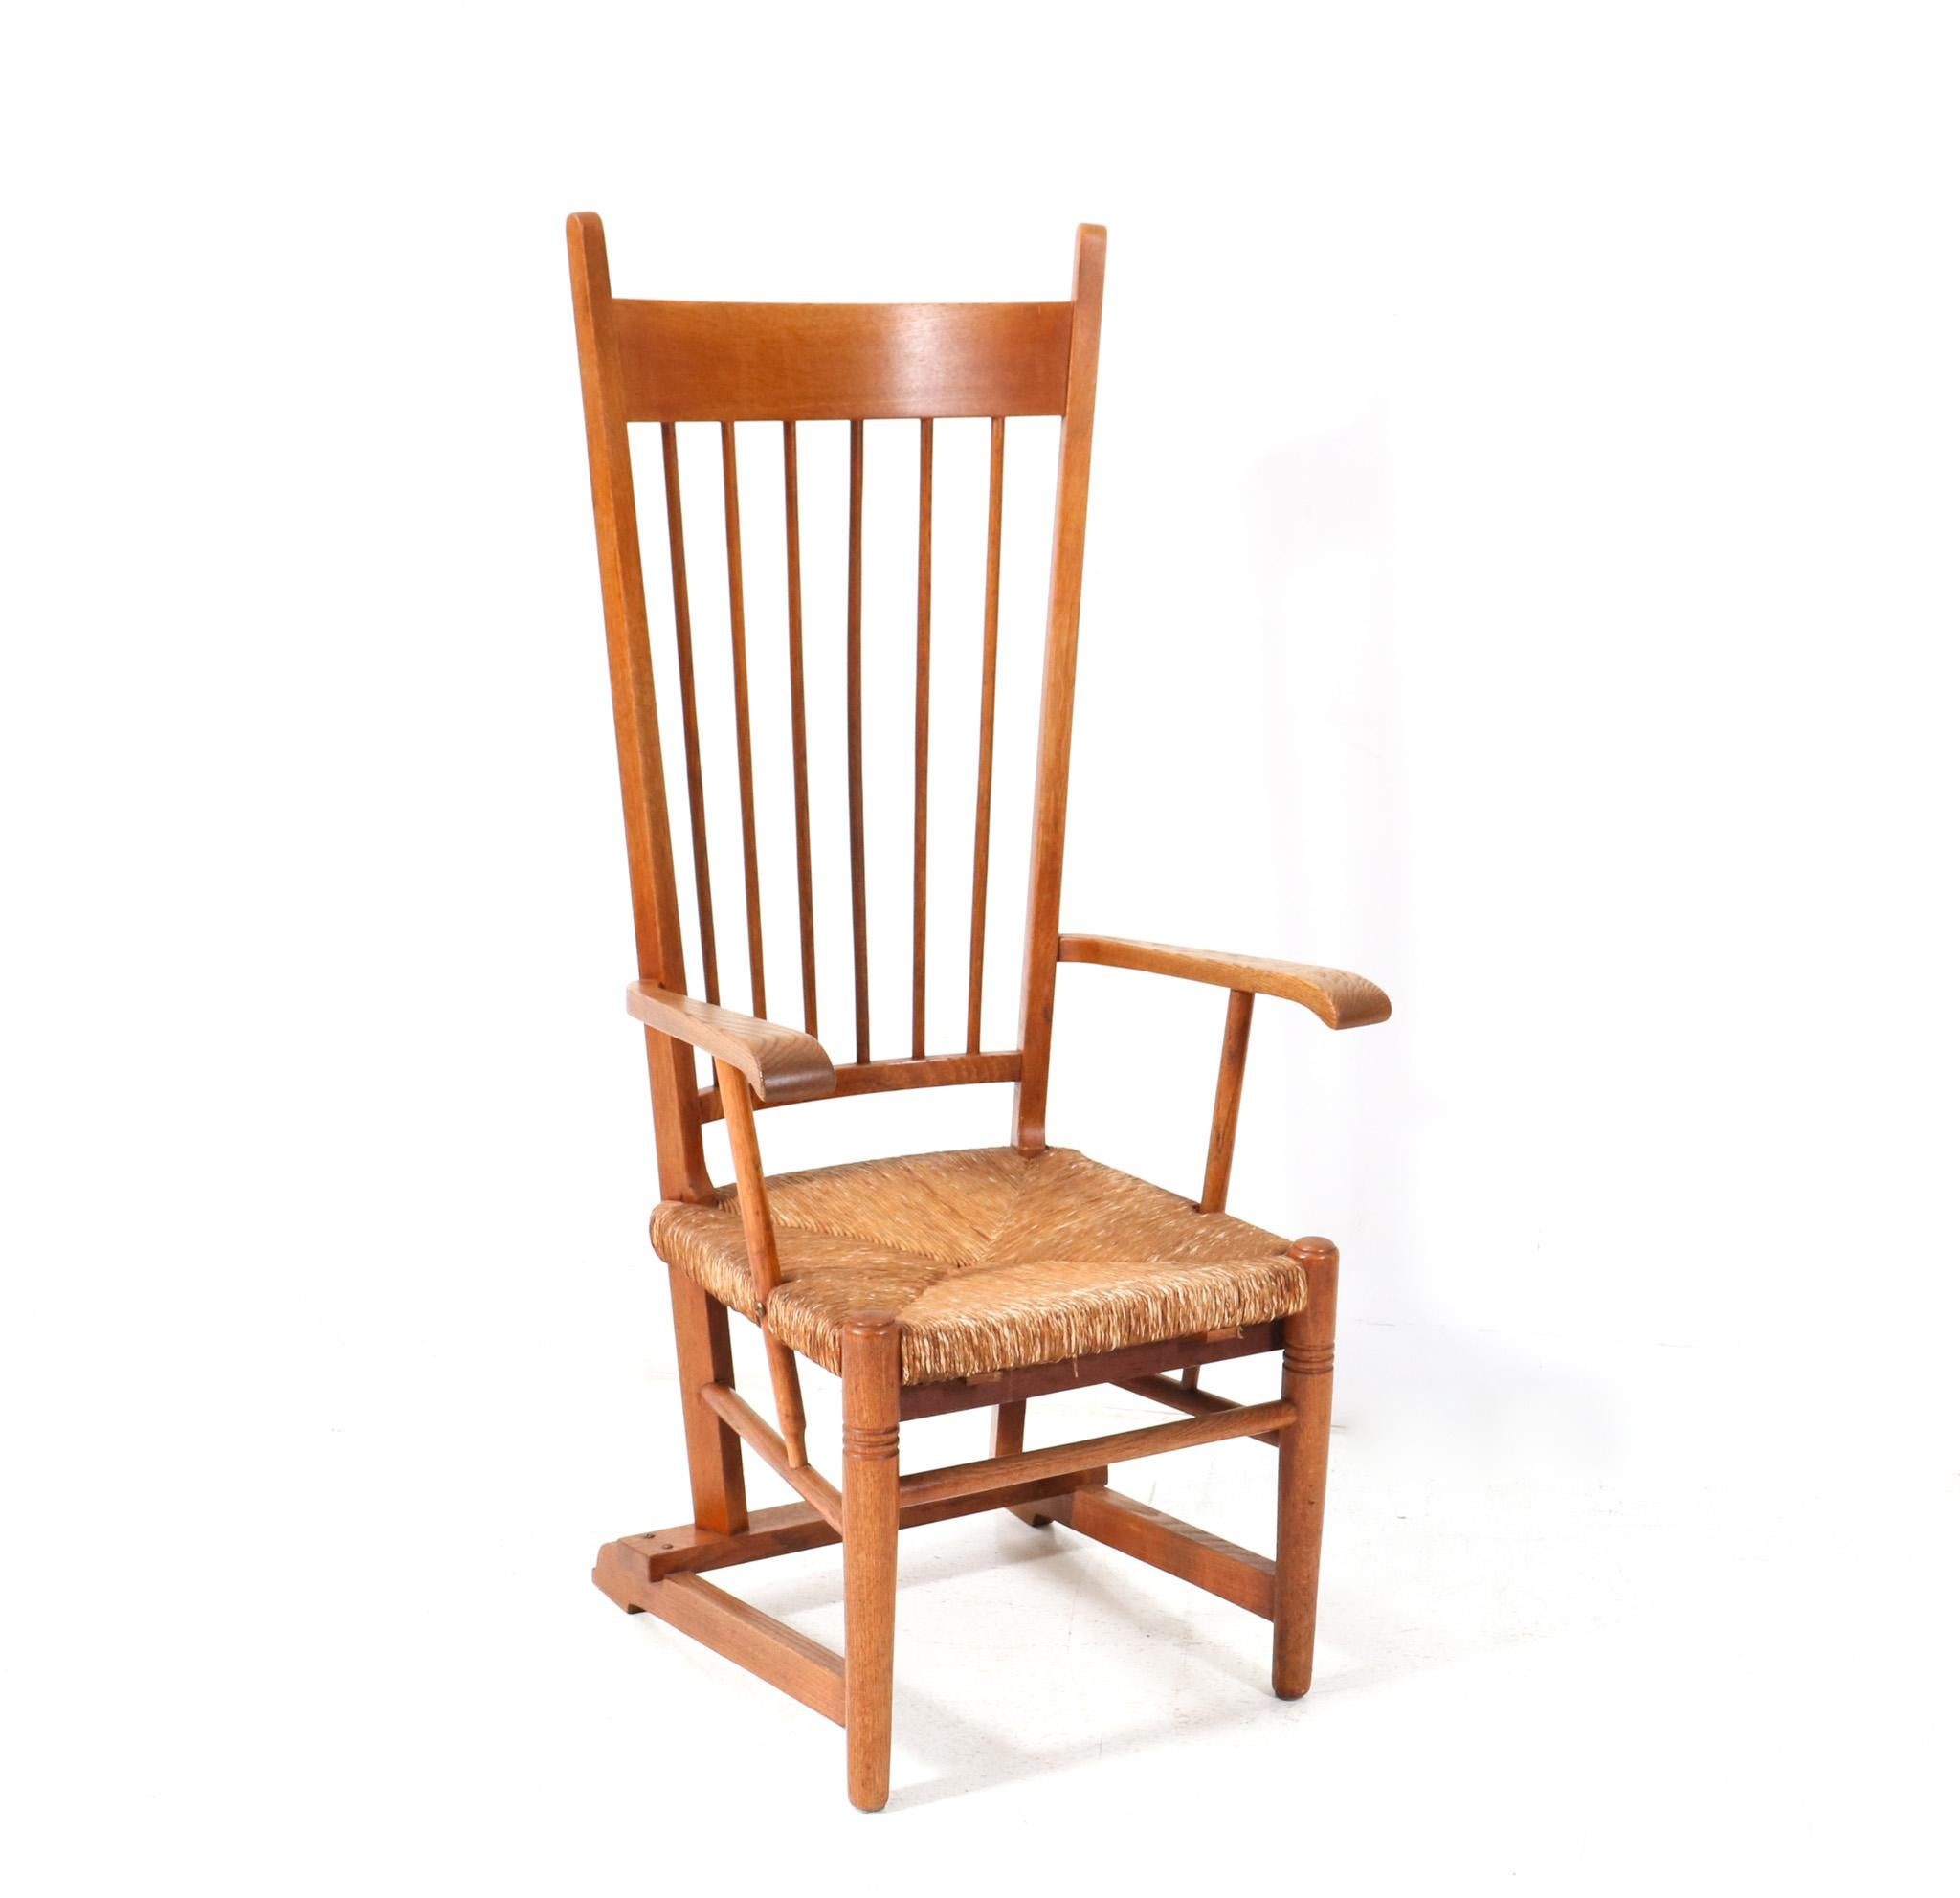 Dutch Oak Arts & Crafts Art Nouveau High Back Armchair with Rush Seat, 1900s